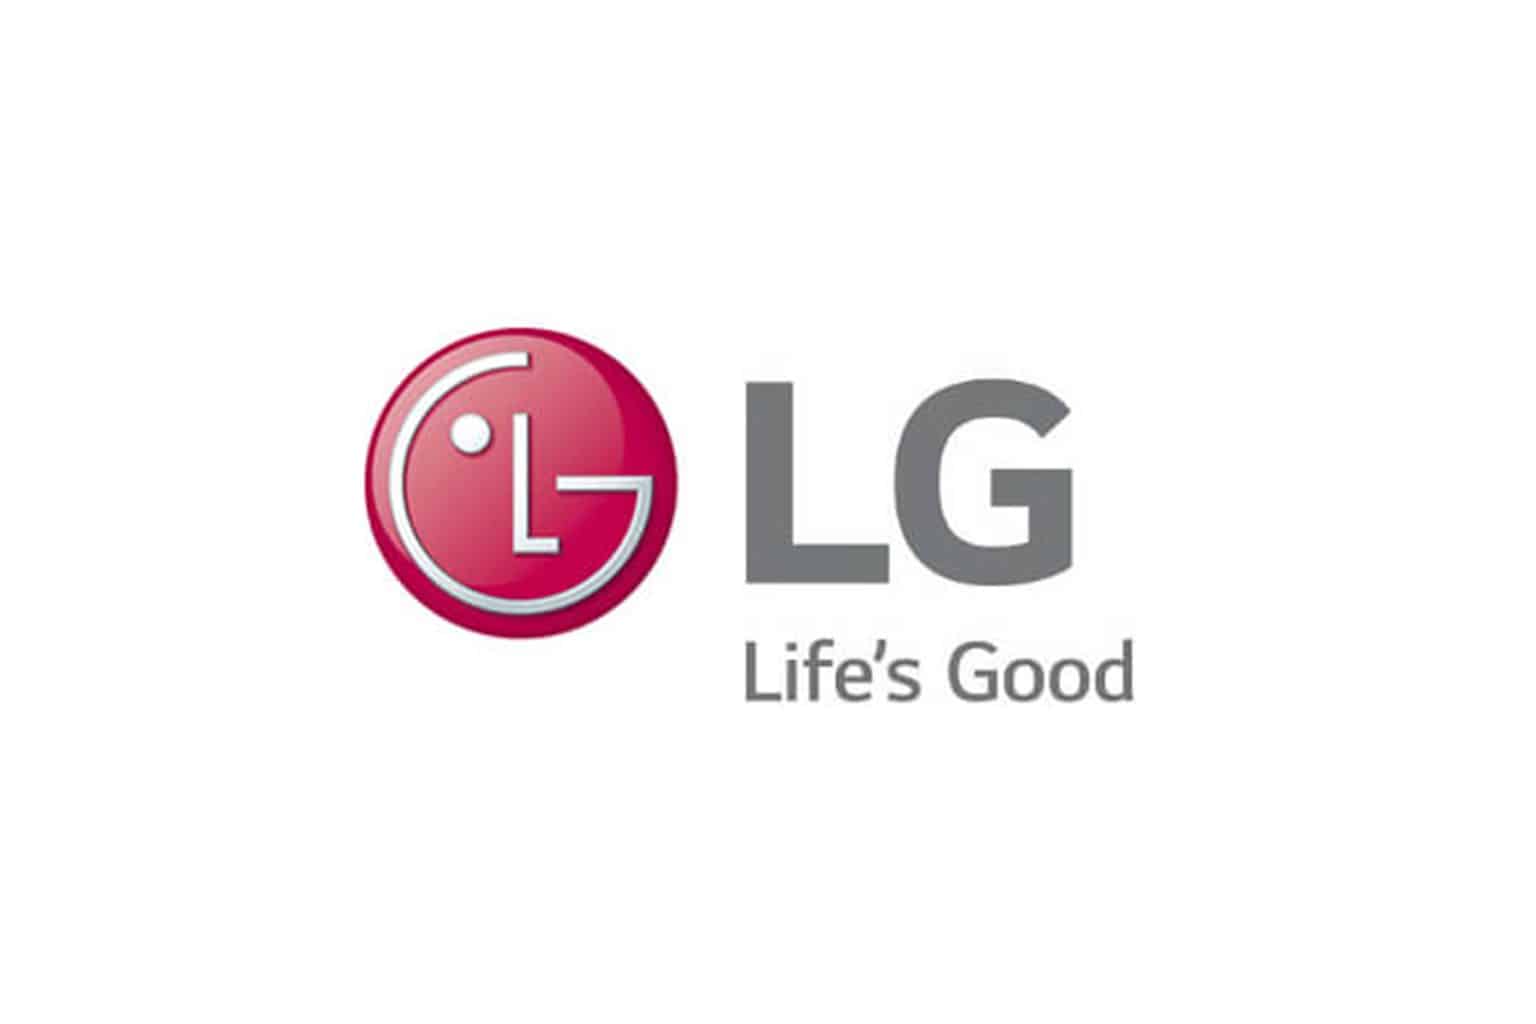 לוגו LG